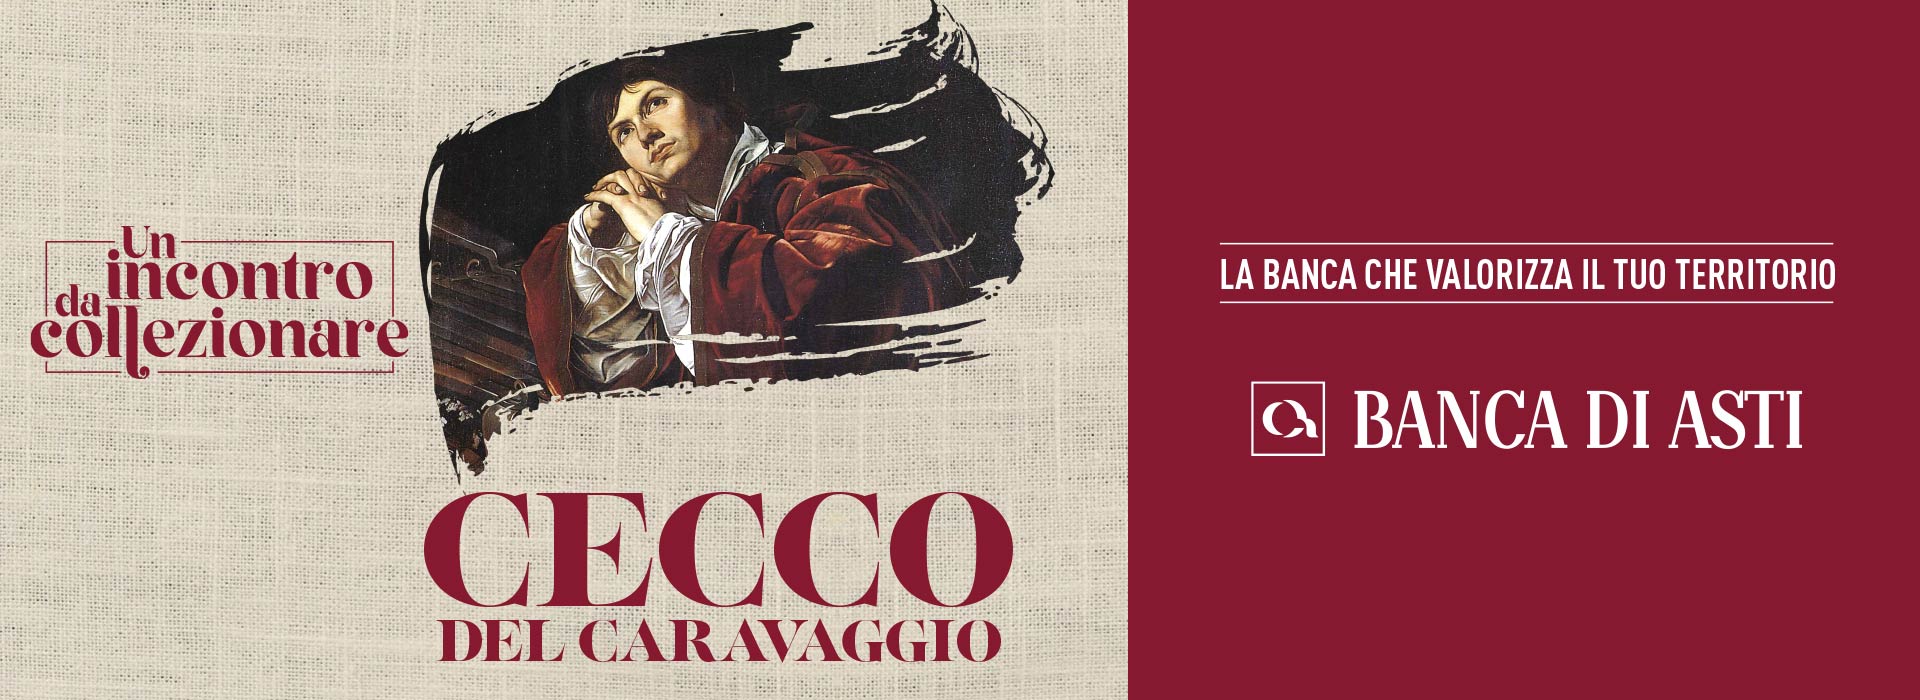 Il mood dell'evento Un incontro da collezionare - Cecco del Caravaggio realizzato da ATC per Banca di Asti